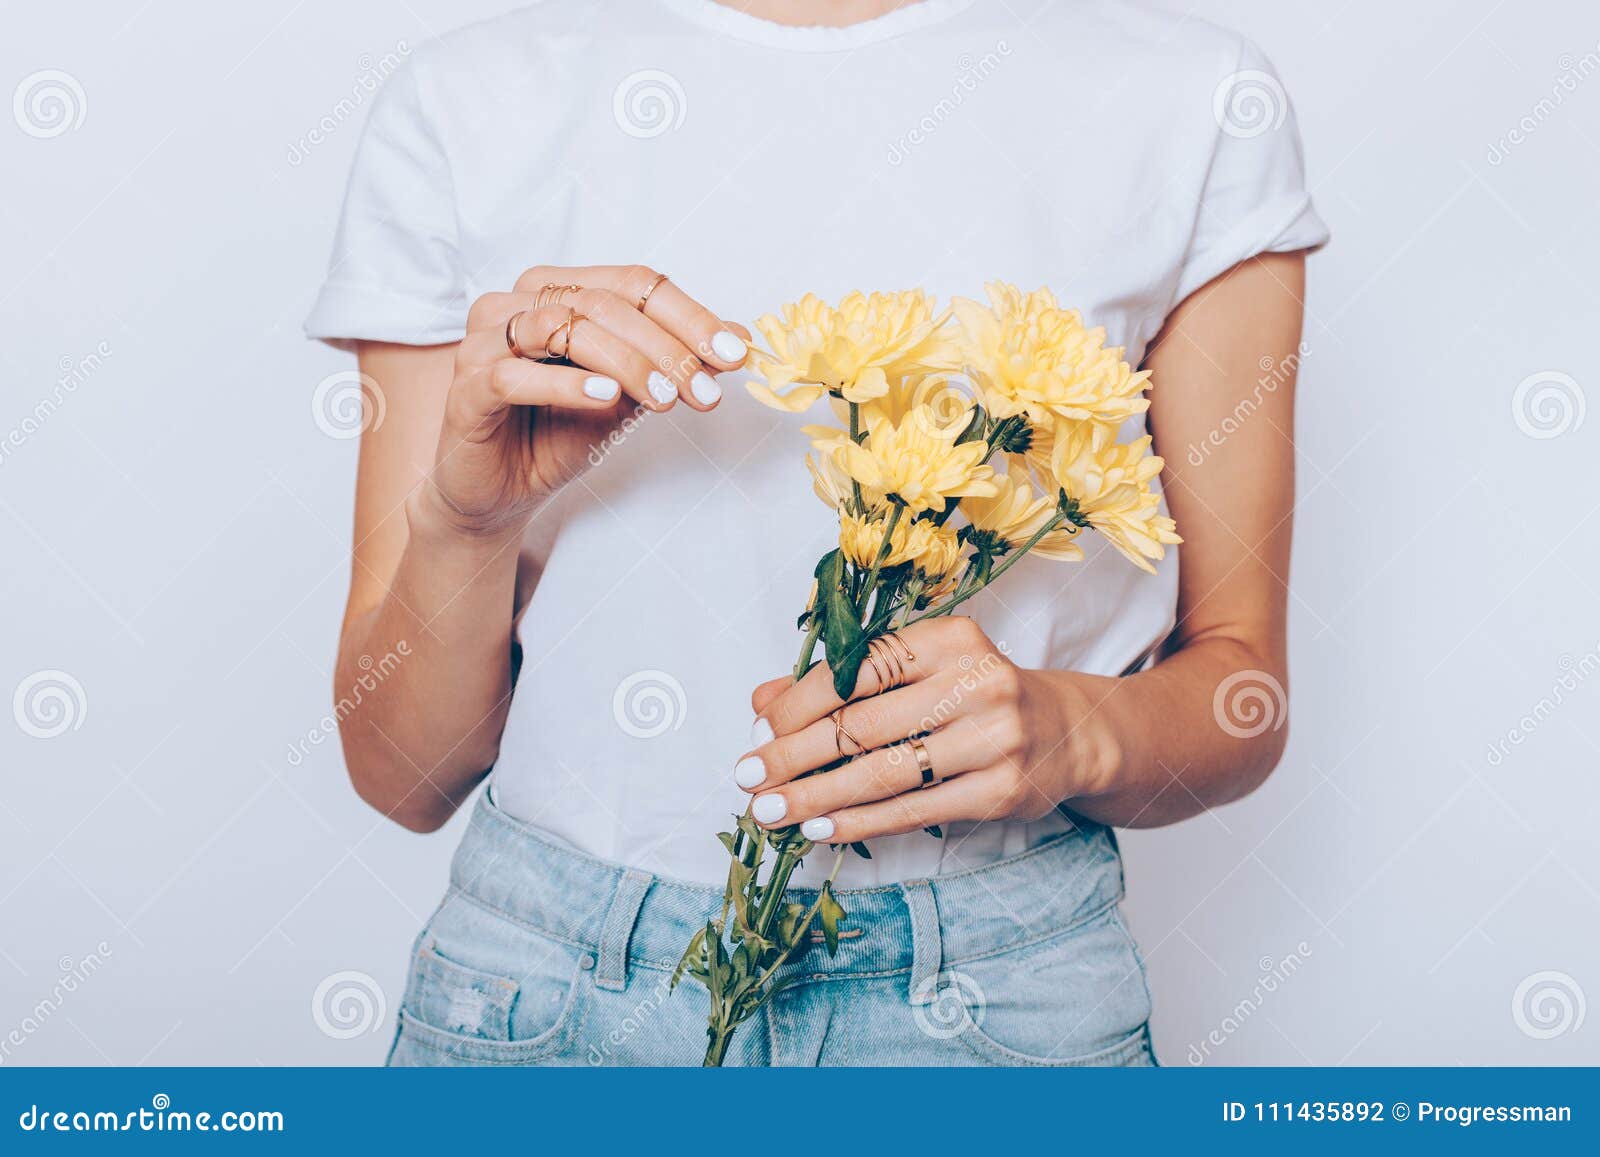 Сидит перед цветами. Женщина держит цветы. Рука держит букет. Девушка держит букет. Девушка держит букет цветов.